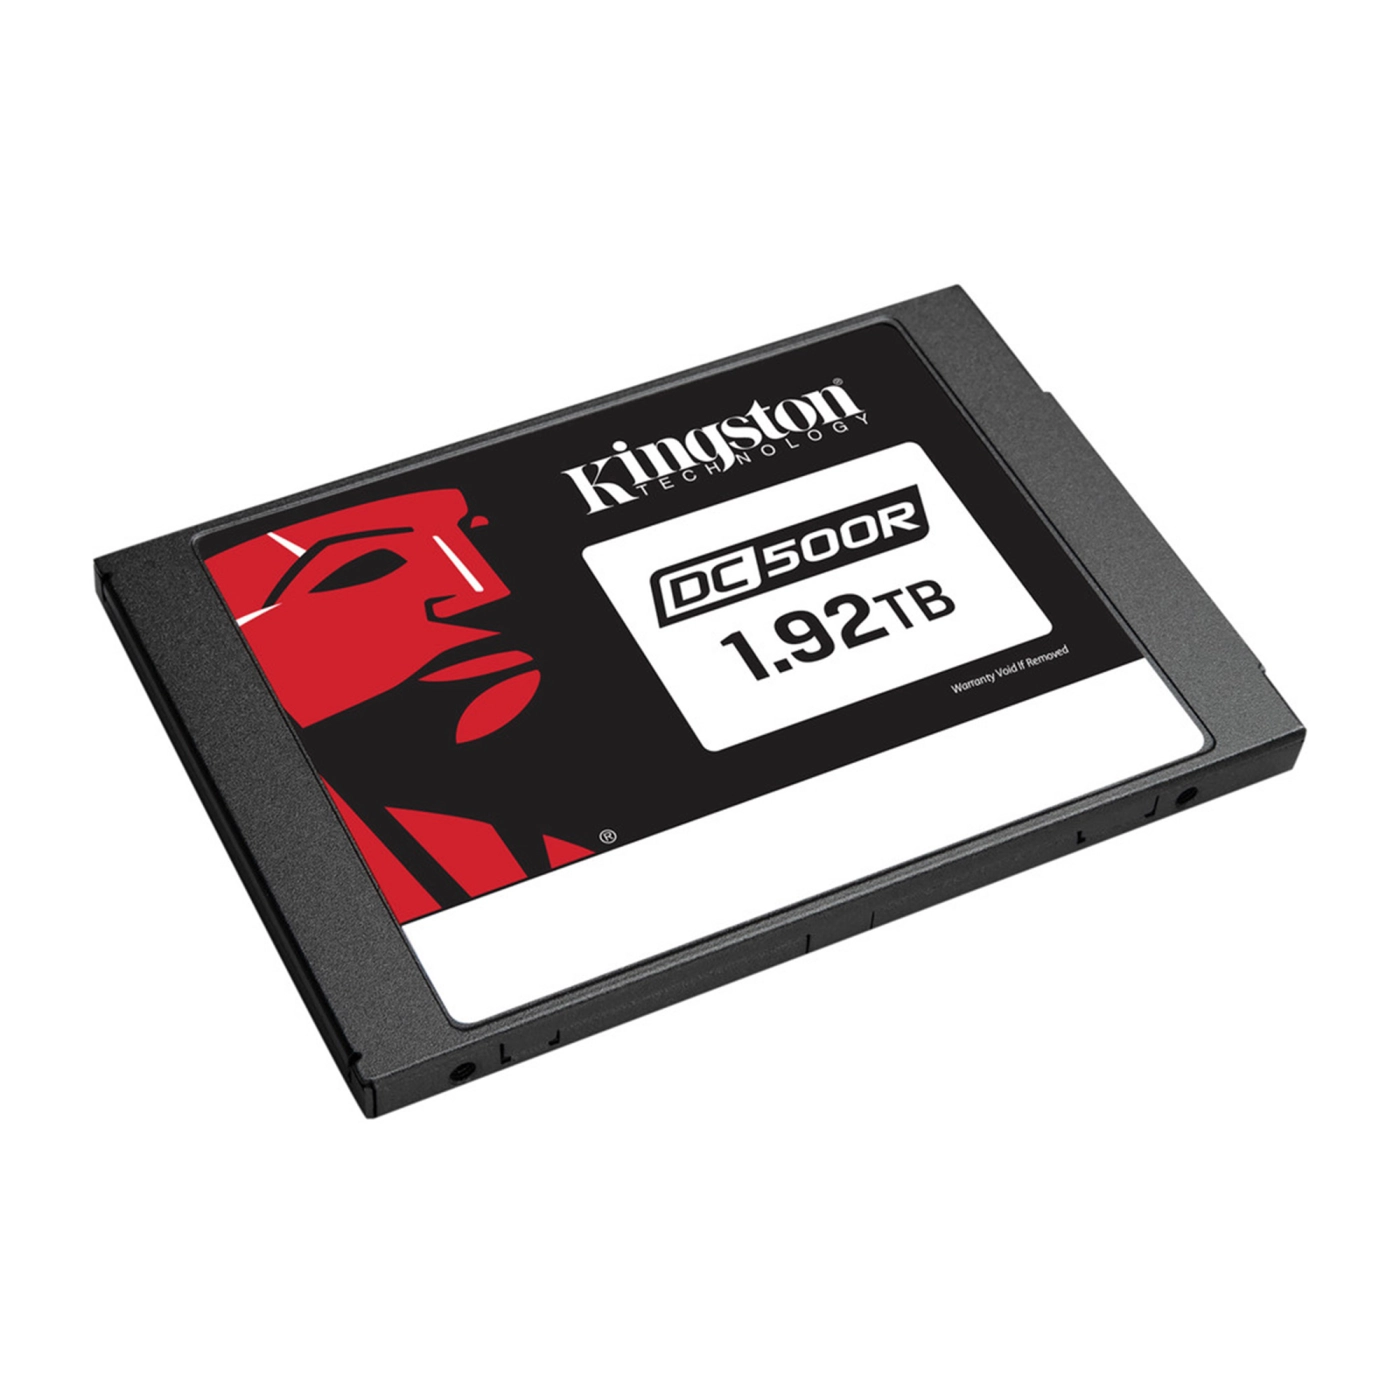 Купить SSD диск Kingston DC500R 1.92TB 2.5" (SEDC500R/1920G) - фото 2